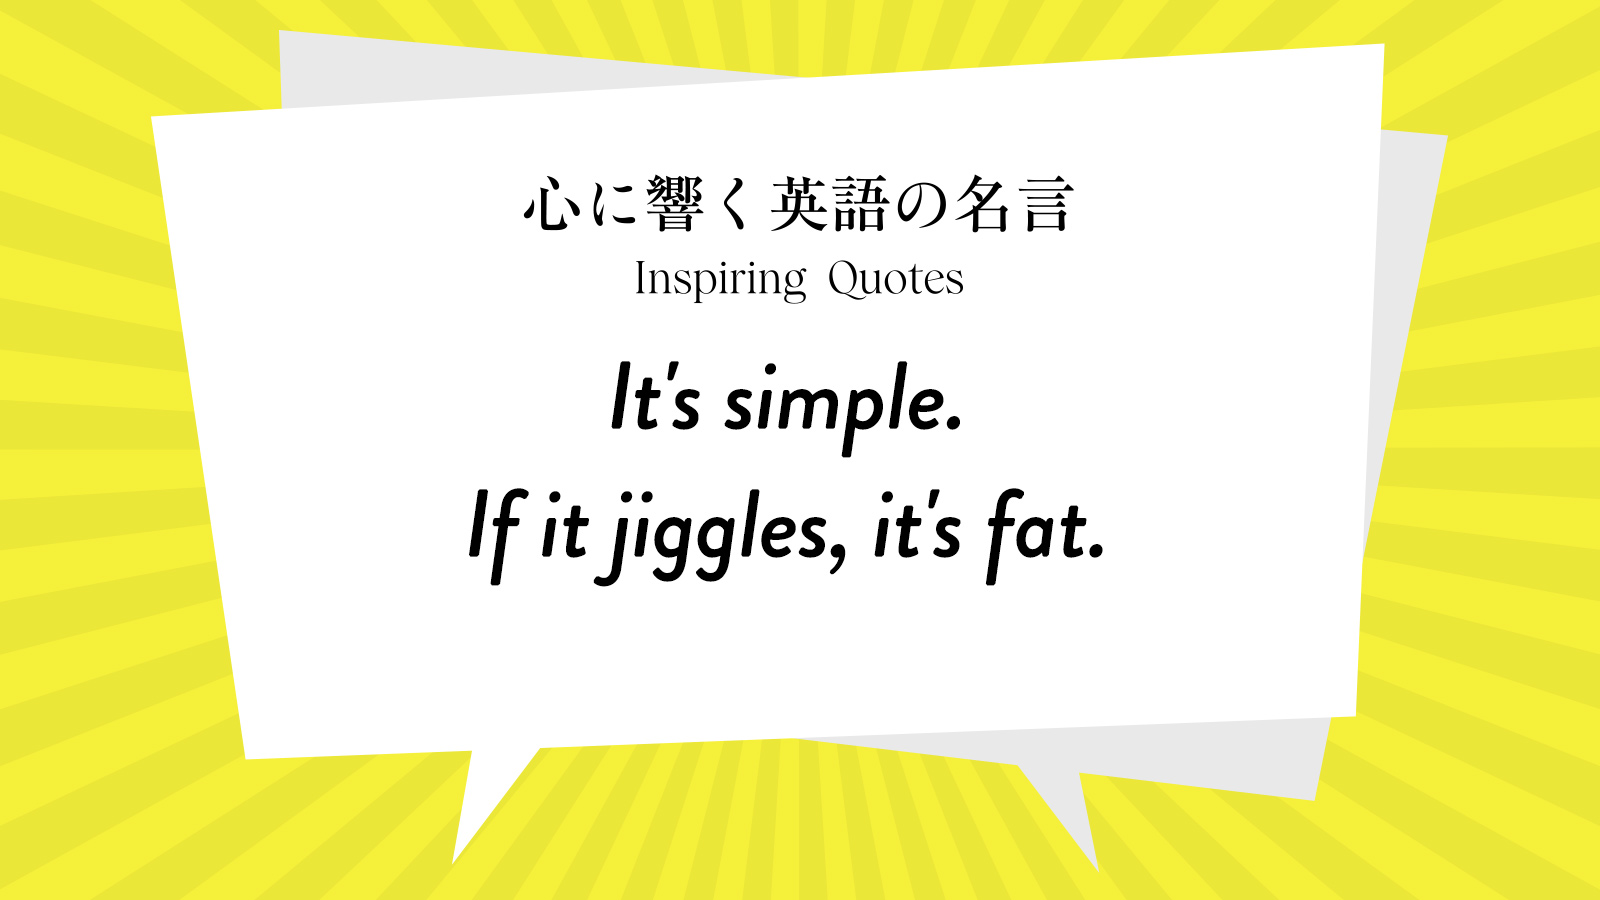 今週の名言 “It’s simple. If it jiggles, it’s fat.” | Inspiring Quotes: 心に響く英語の名言